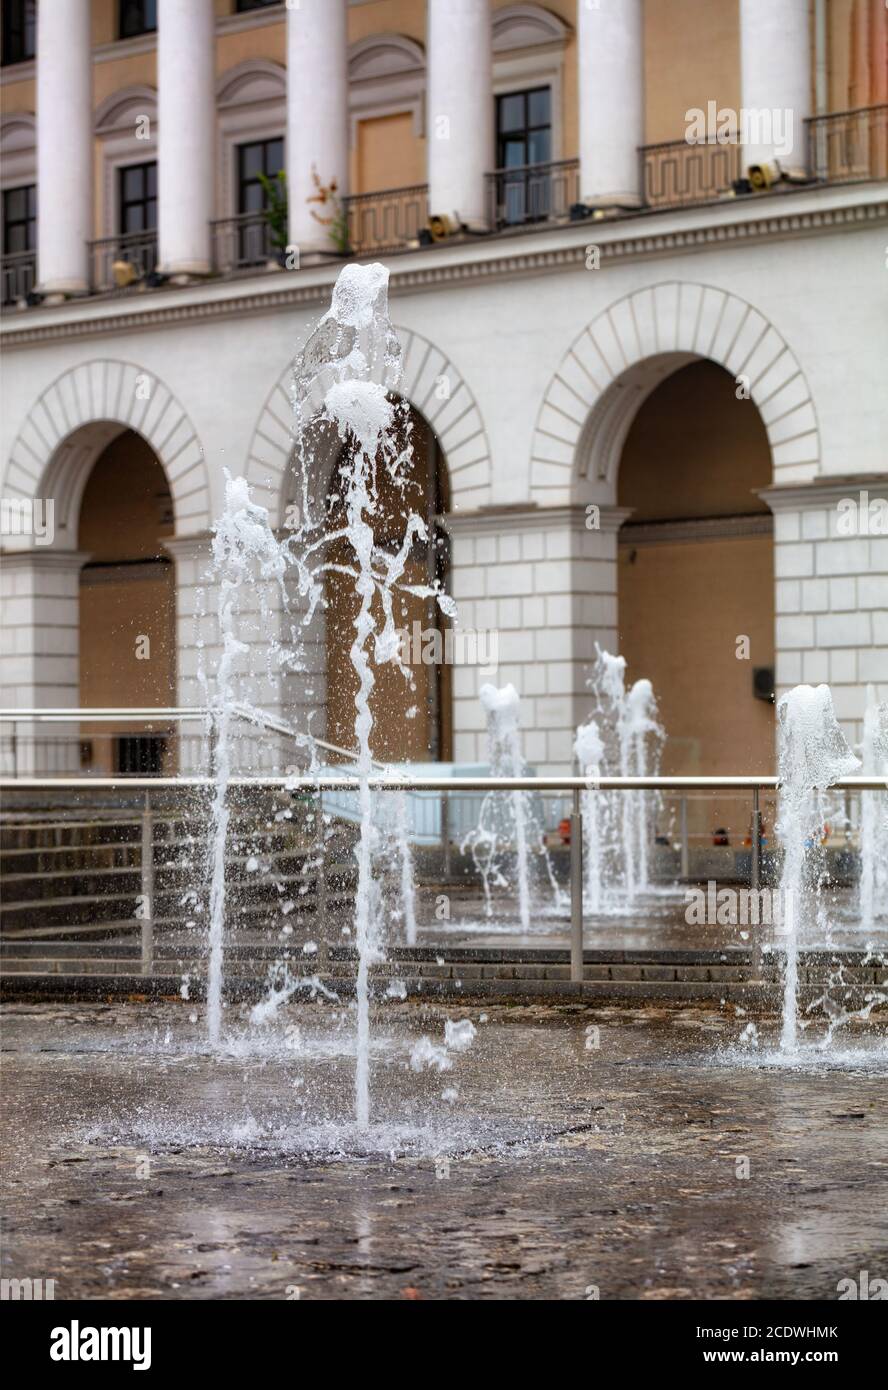 Potenti getti d'acqua si innalzano nella fontana della città sullo sfondo della facciata ad arco e a colonne del Conservatorio di Kiev. Foto Stock